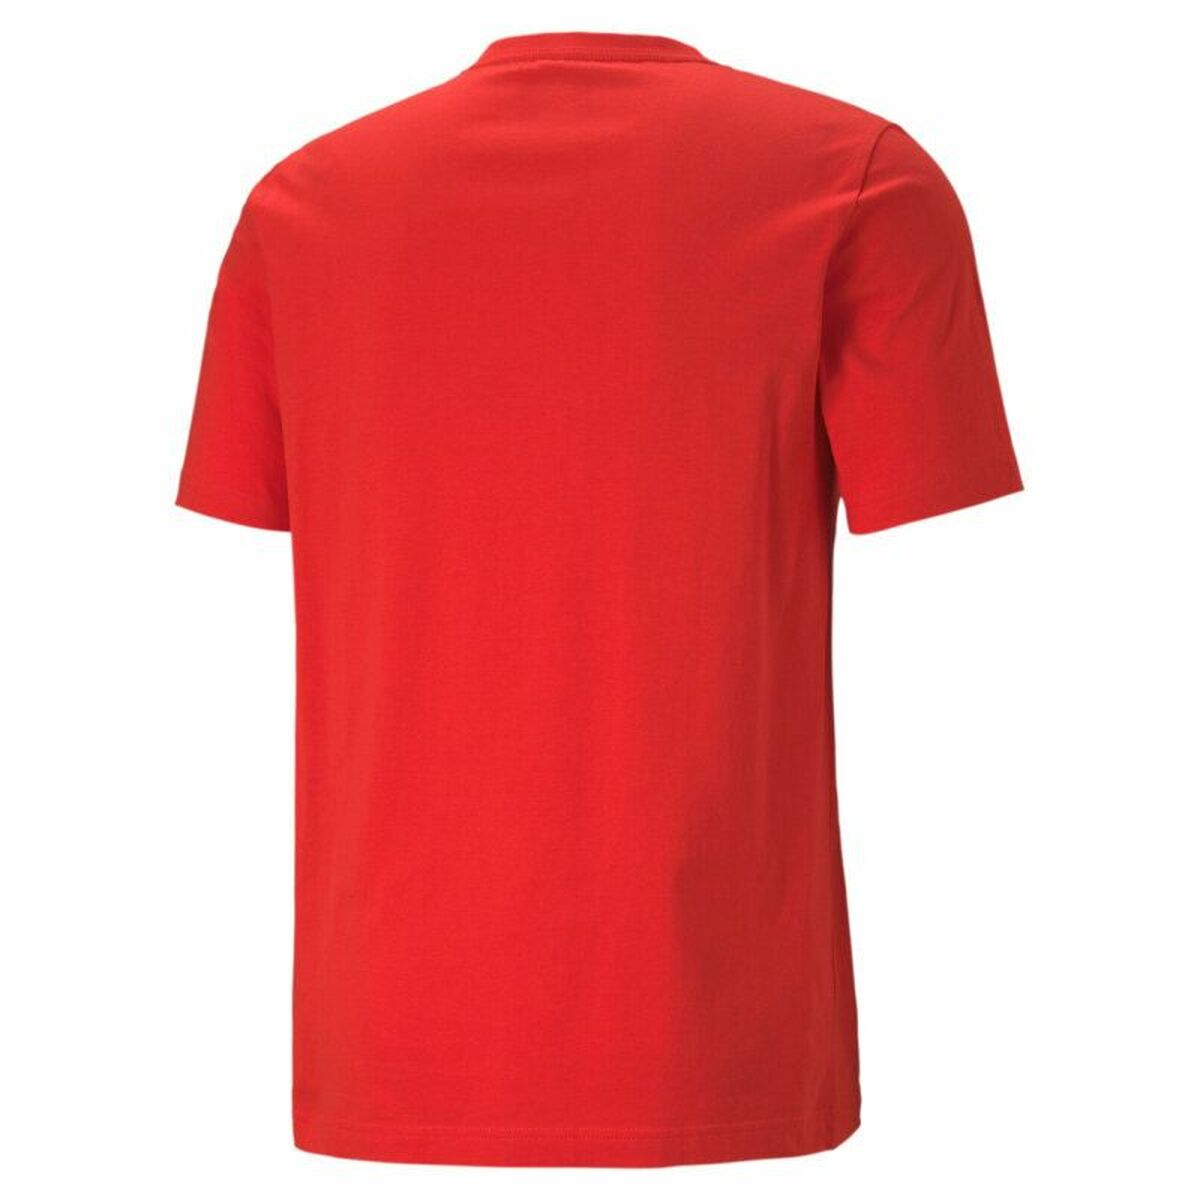 Kaufe Herren Kurzarm-T-Shirt Puma Essentials+ Rot bei AWK Flagship um € 51.00